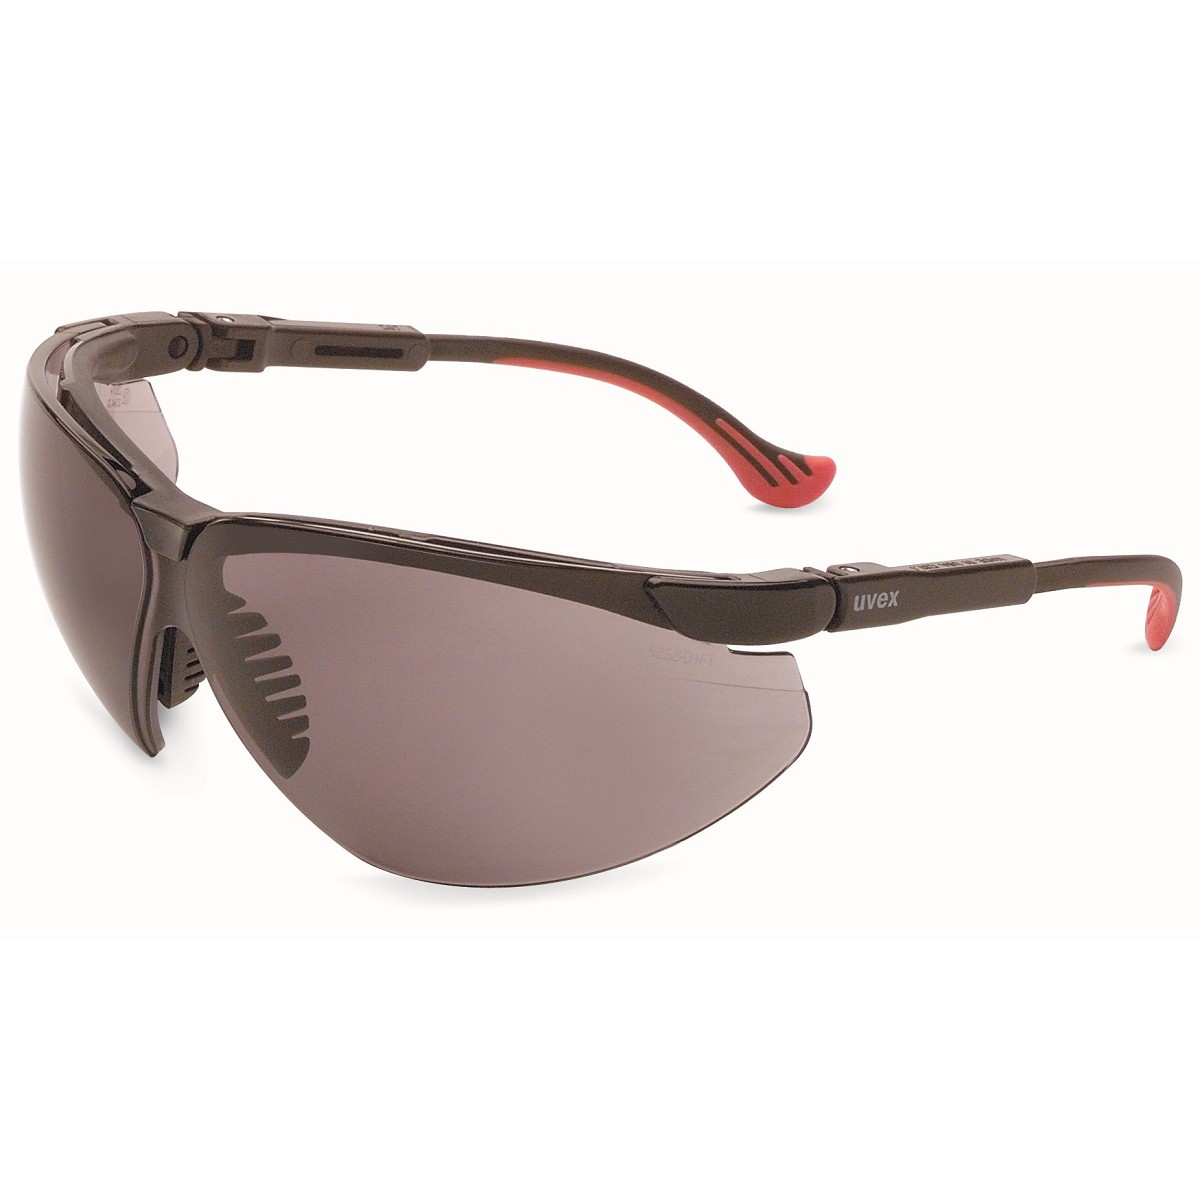 Uvex S3300HS Genesis XC Safety Glasses - Black Frame - Gray HydroShield ...